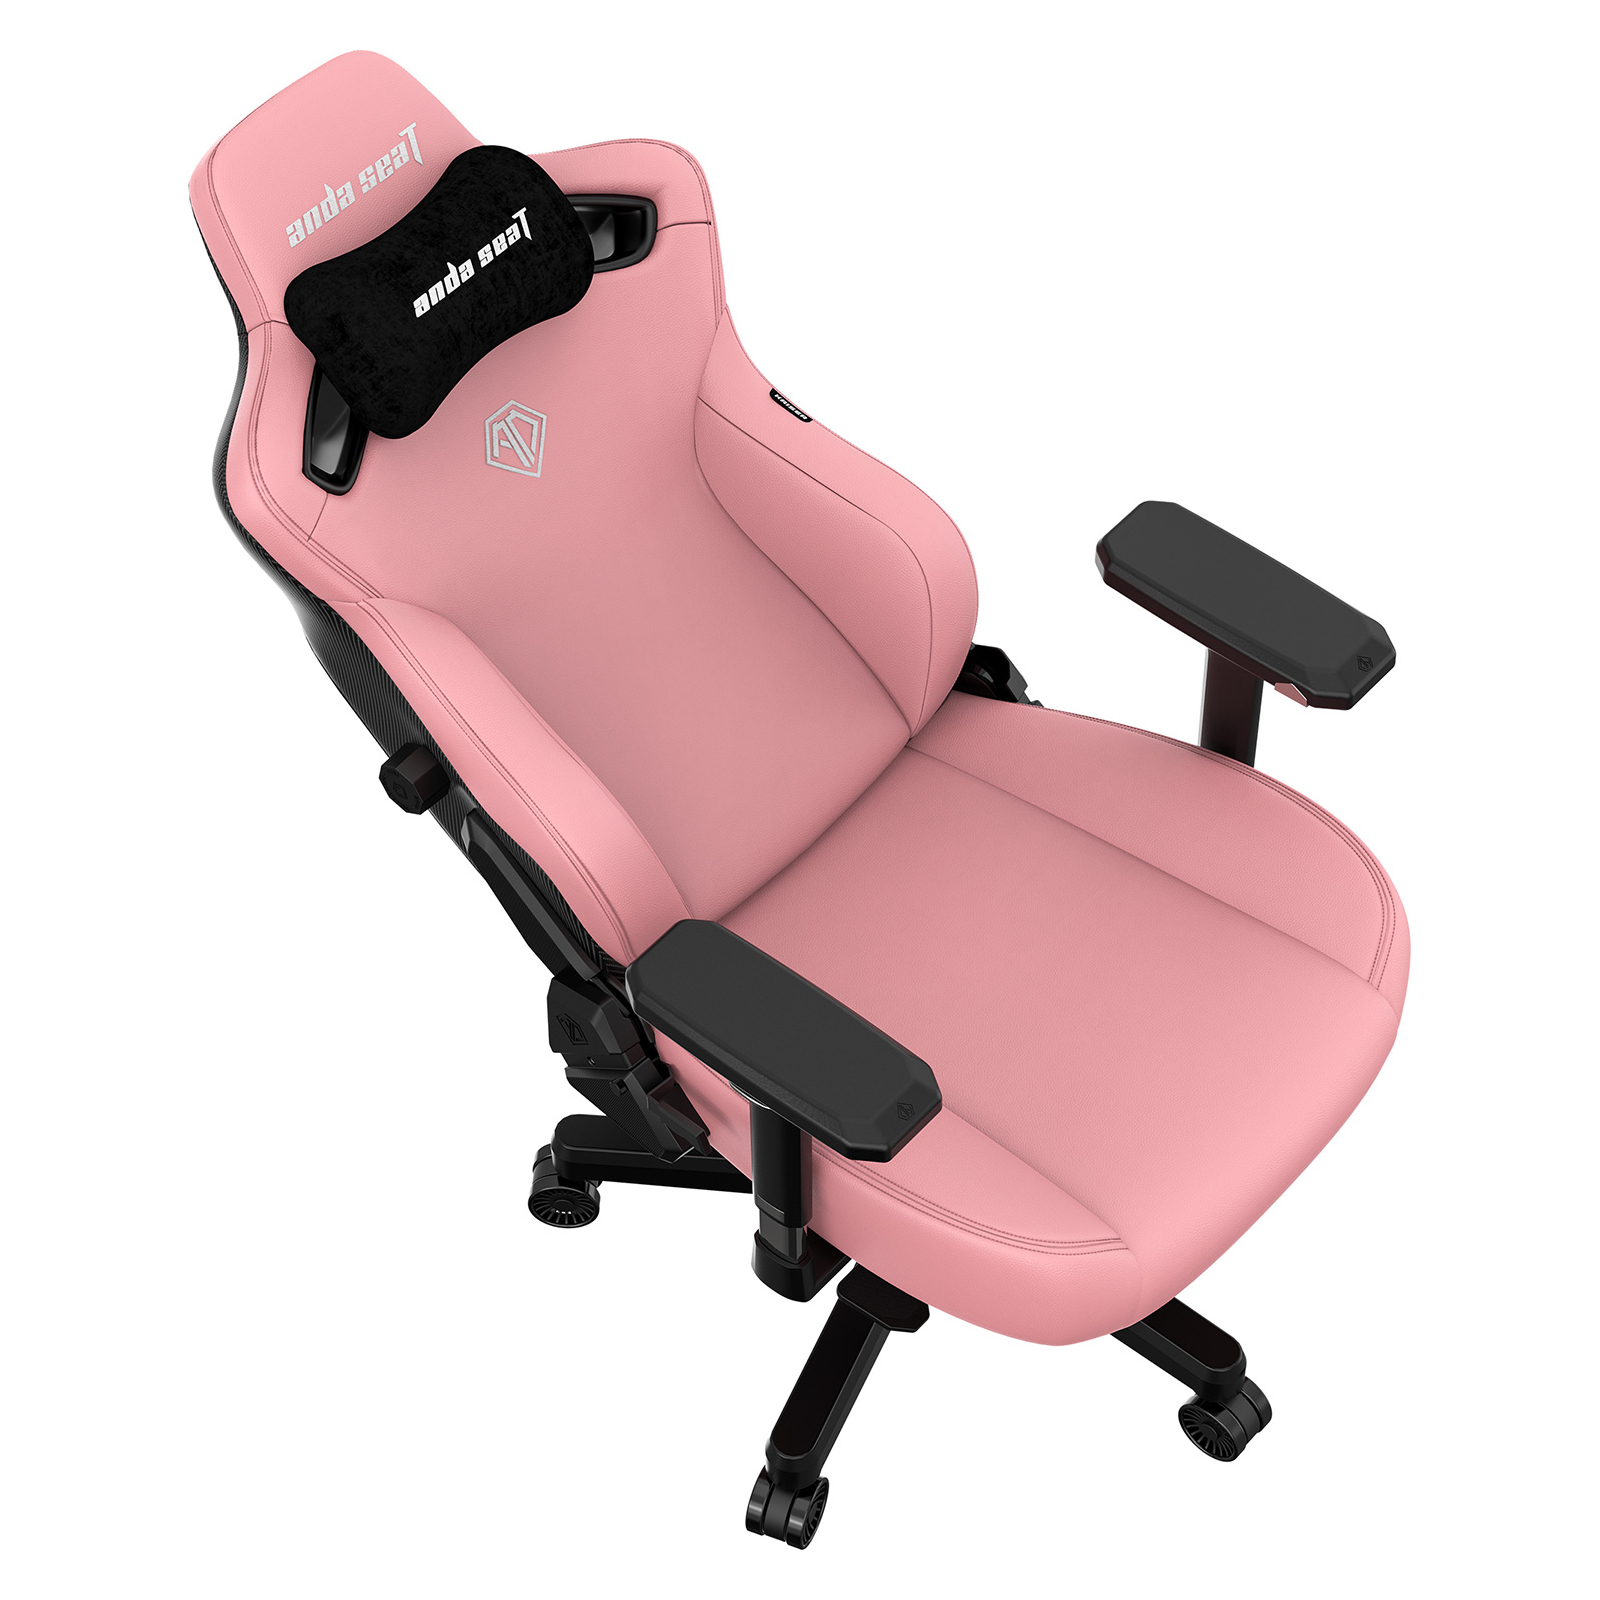 Кресло игровое Anda Seat Kaiser 3 Size L Black (AD12YDC-L-01-B-PV/C) изображение 6